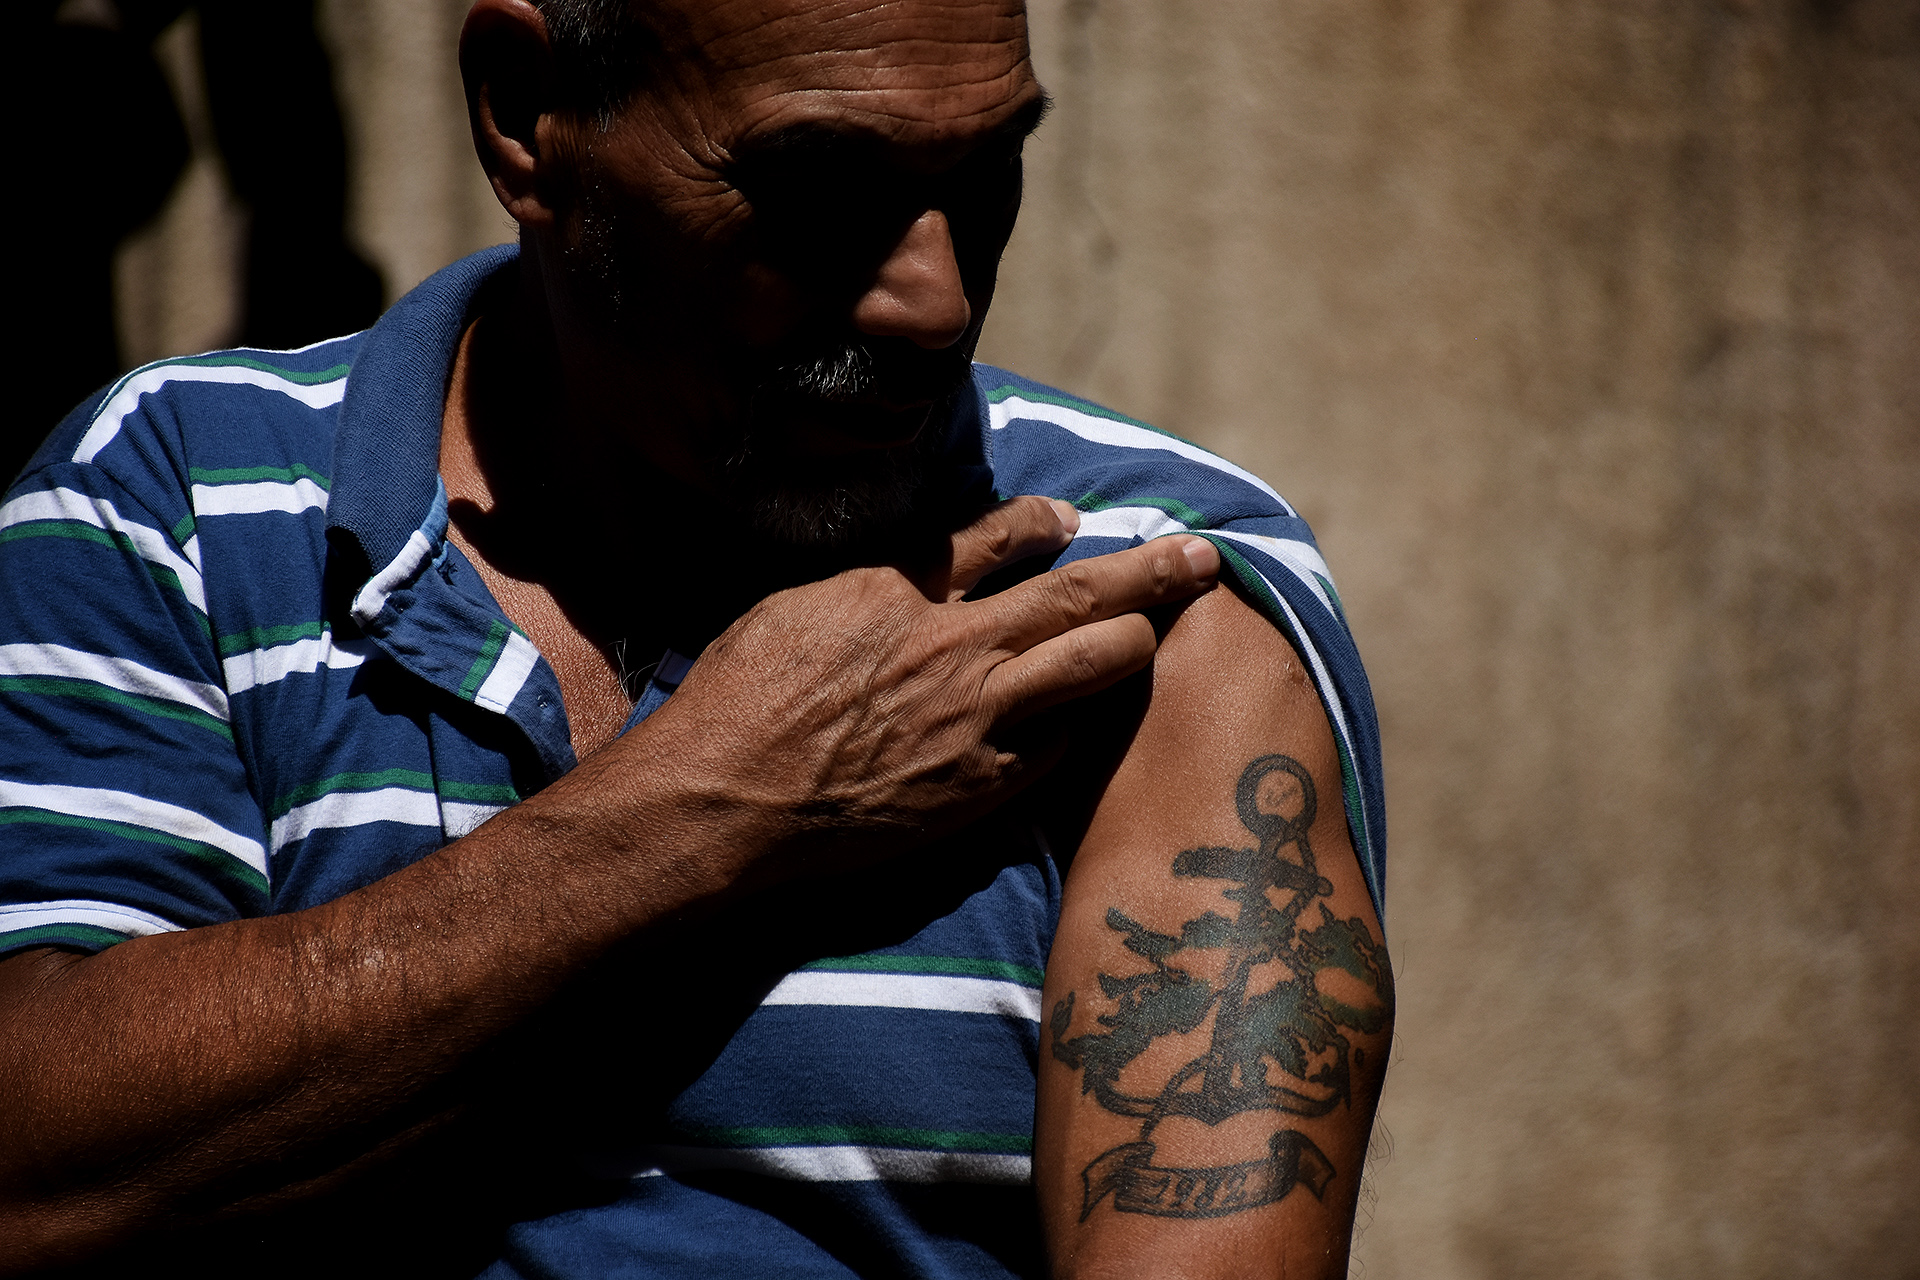 El tatuaje de Horacio Nuñez: las Malvinas y la Armada Argentina en la piel y el corazón (Matías Arbotto)